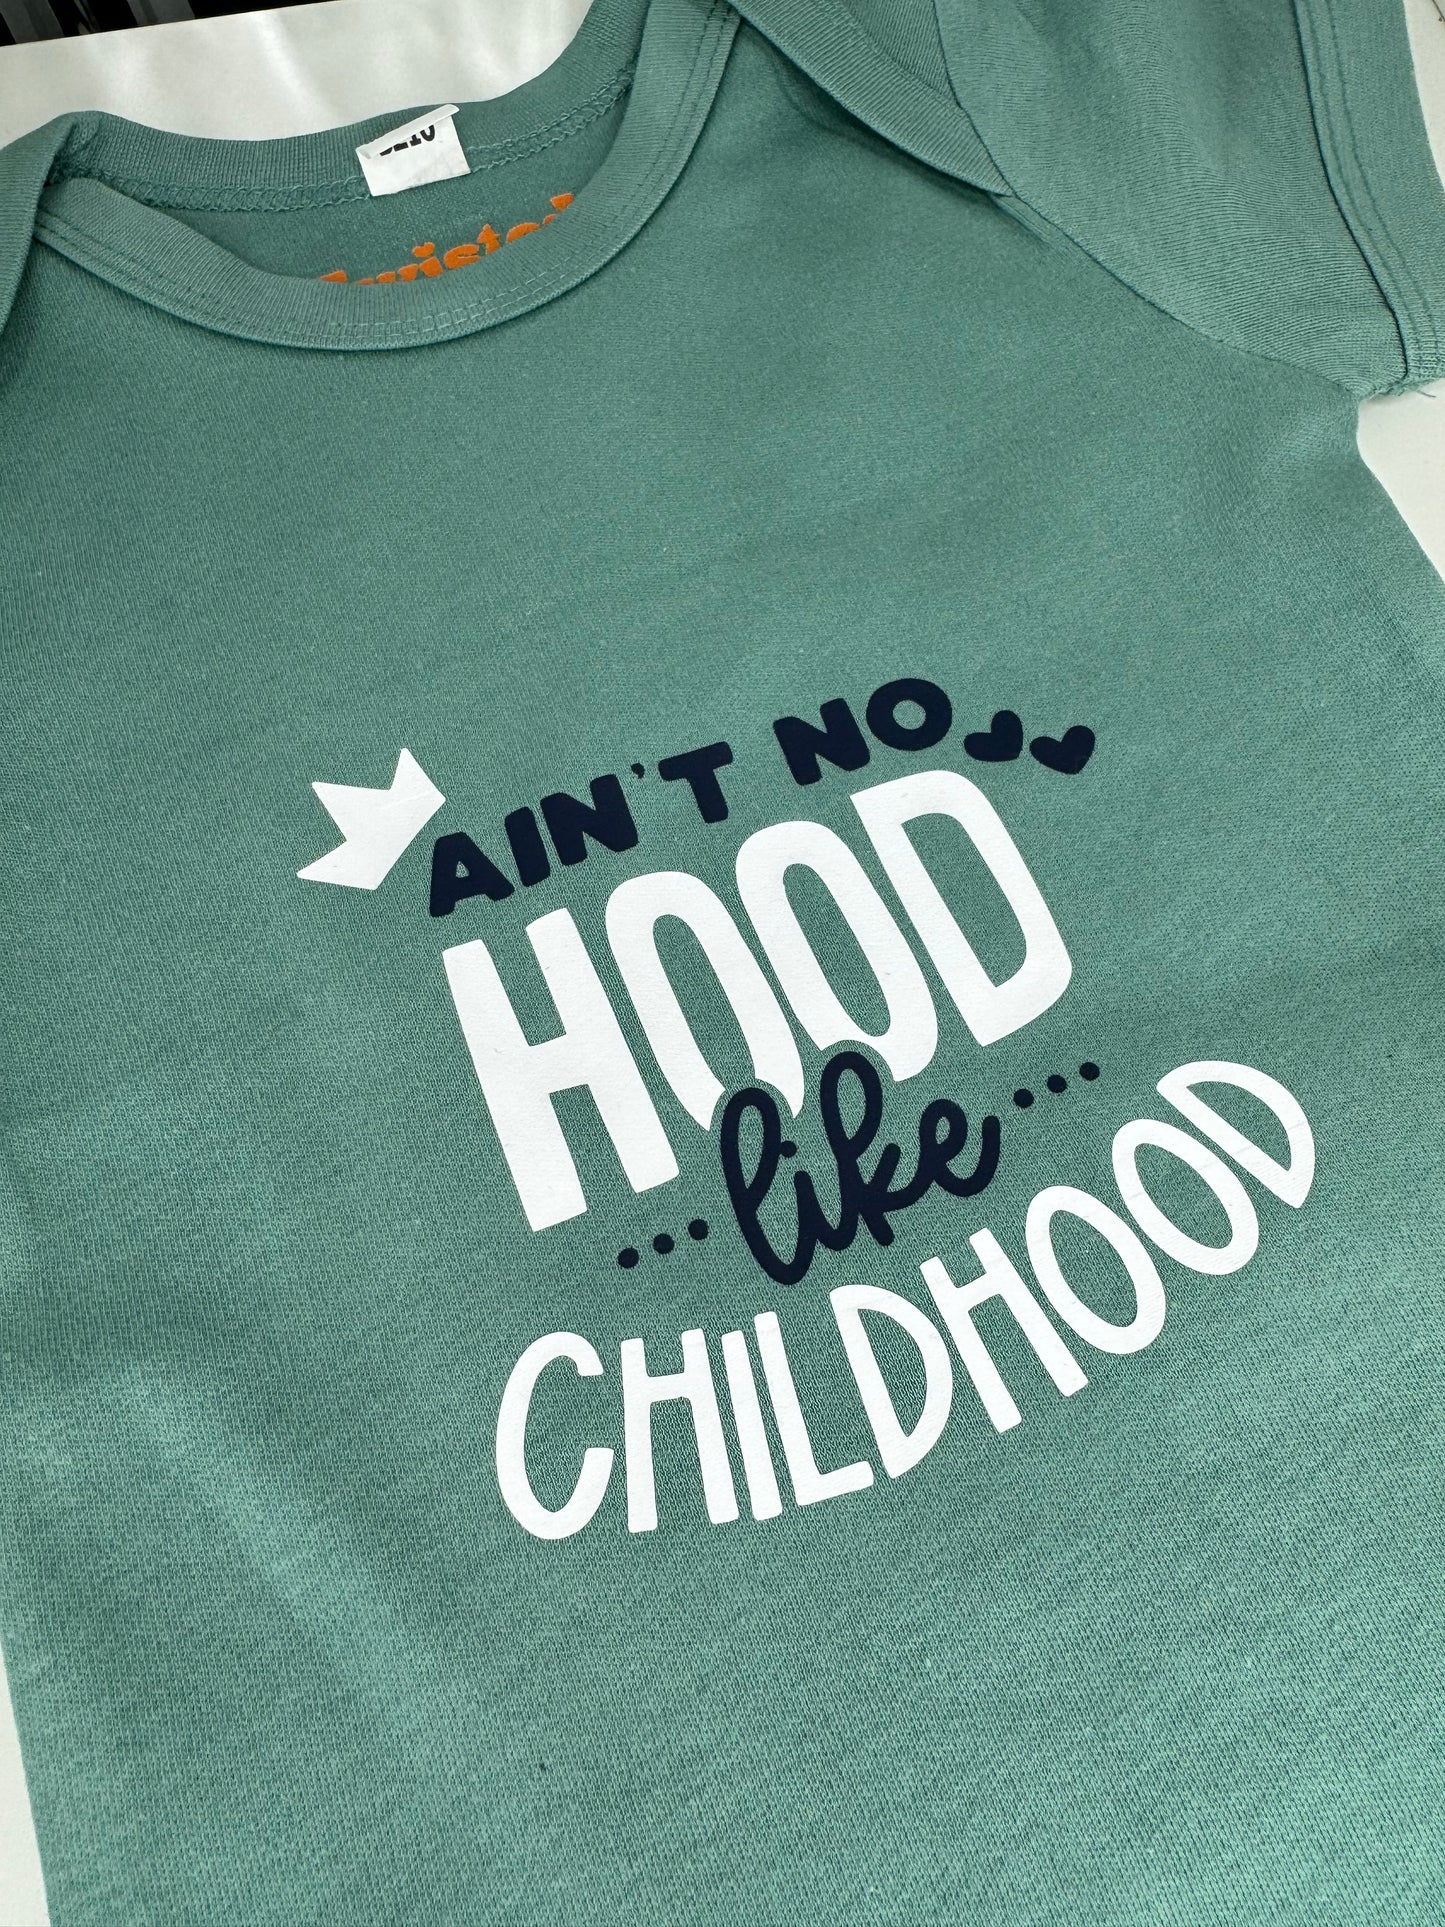 Ain't No Hood Like Childhood Baby Bodysuit